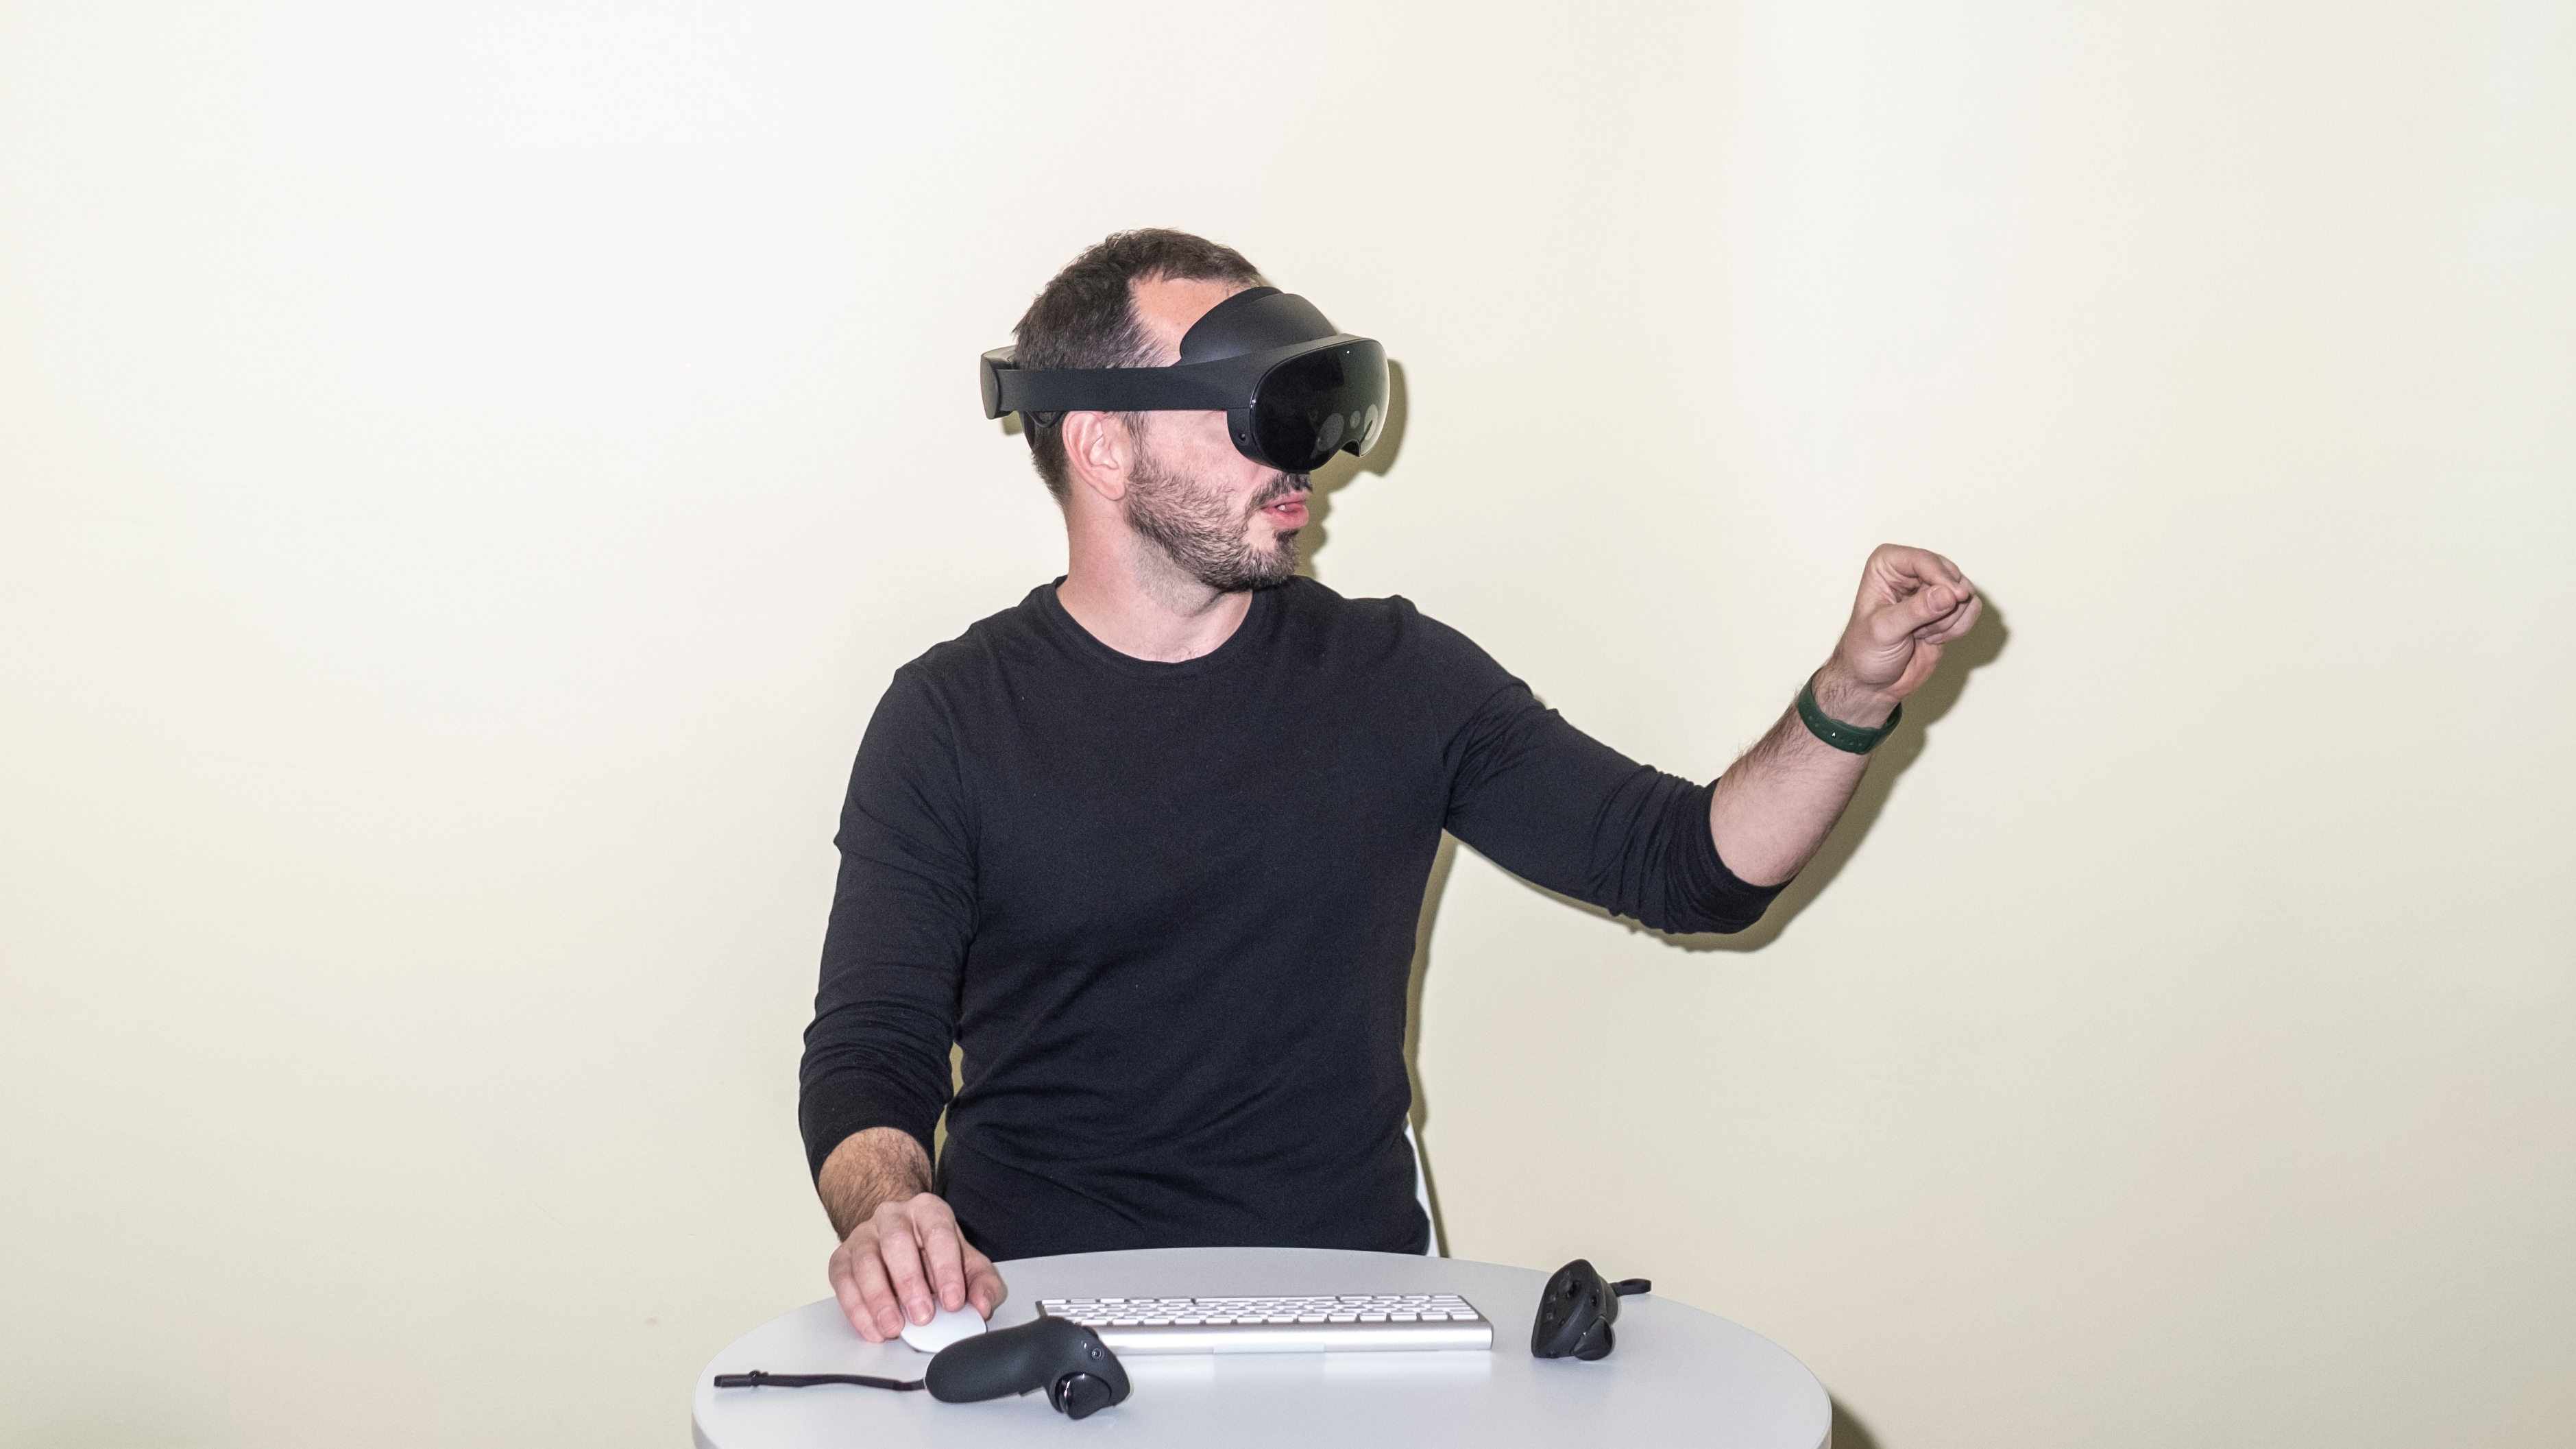 Descubre las gafas de realidad virtual para entrar en el Metaverso y otras  noticias curiosas